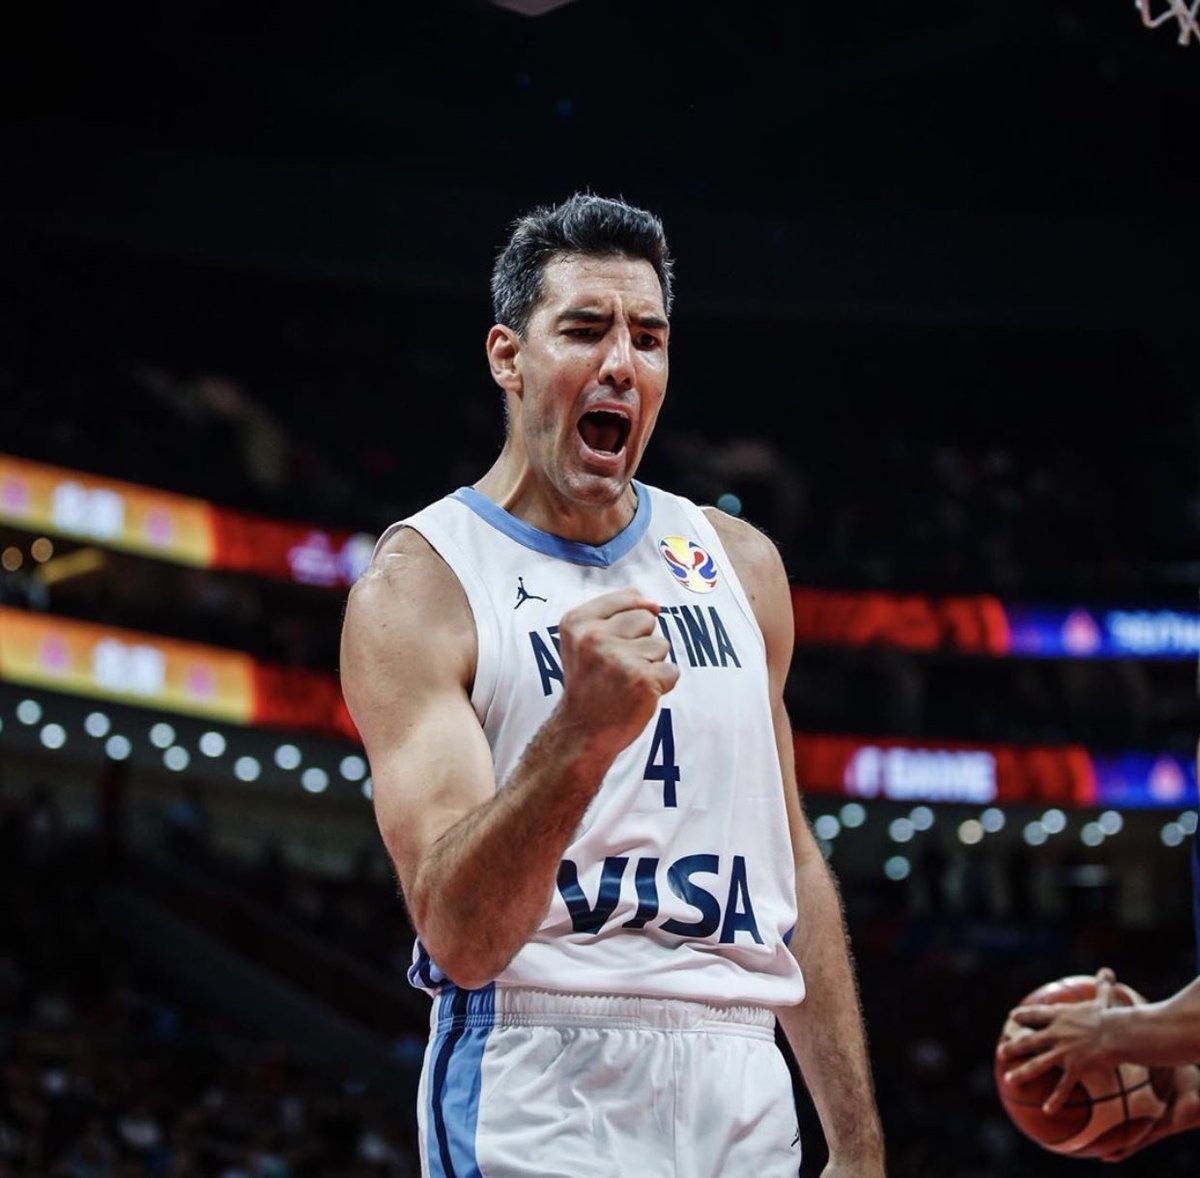 Felicitaciones a la selección de Argentina por pasar a la final de la FIBA WORLD CHAMPIONSHIP. ¡Vamos Argentina! 🇦🇷